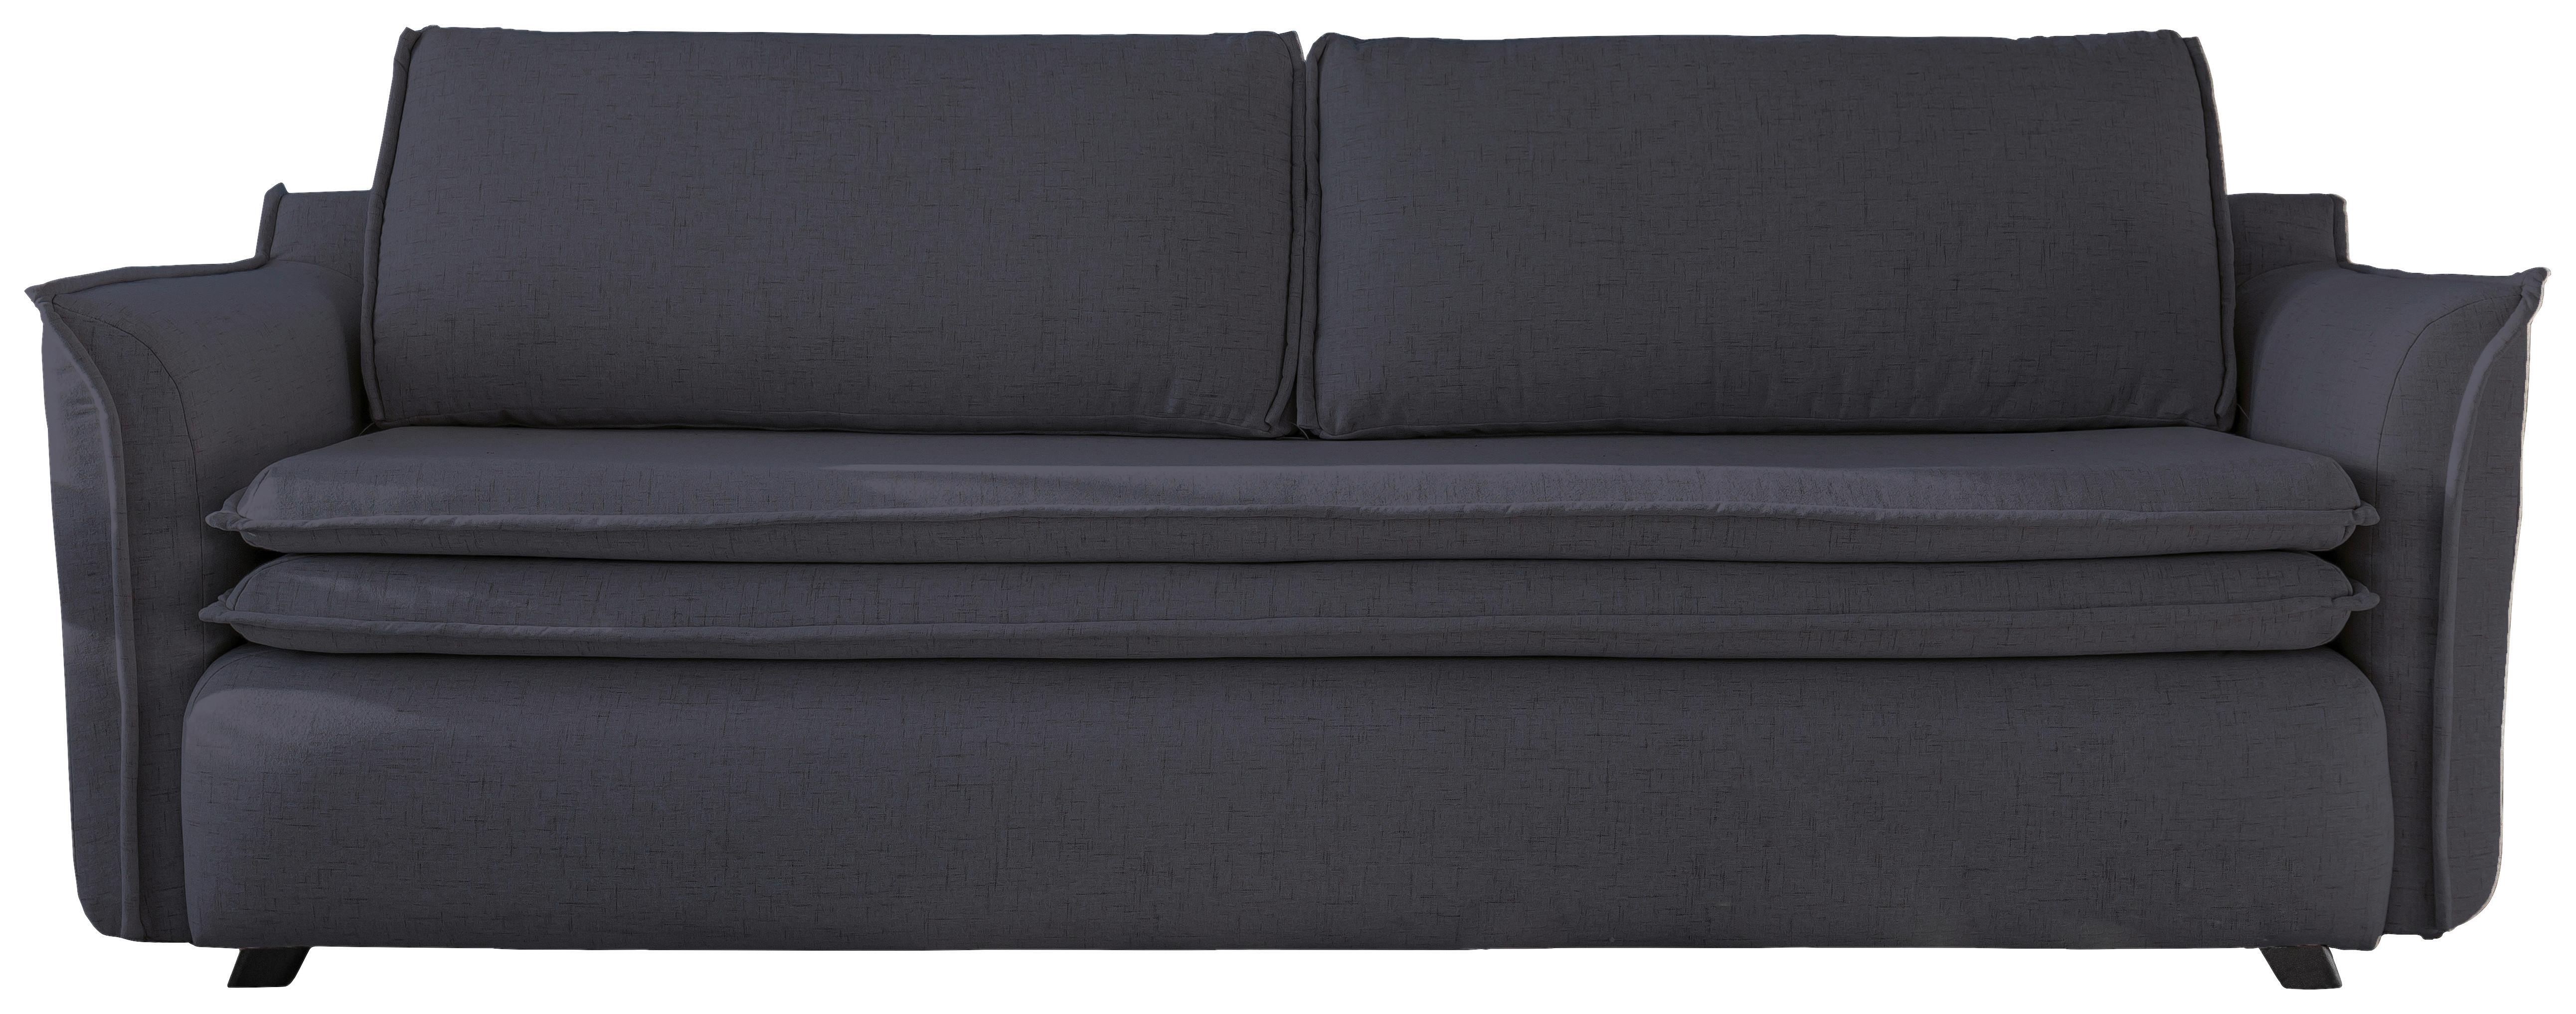 3-Sitzer-Sofa mit Schlaffunkt. und Bettkasten Charming Charlie - Anthrazit/Schwarz, Basics, Textil (225/85/90cm) - MID.YOU